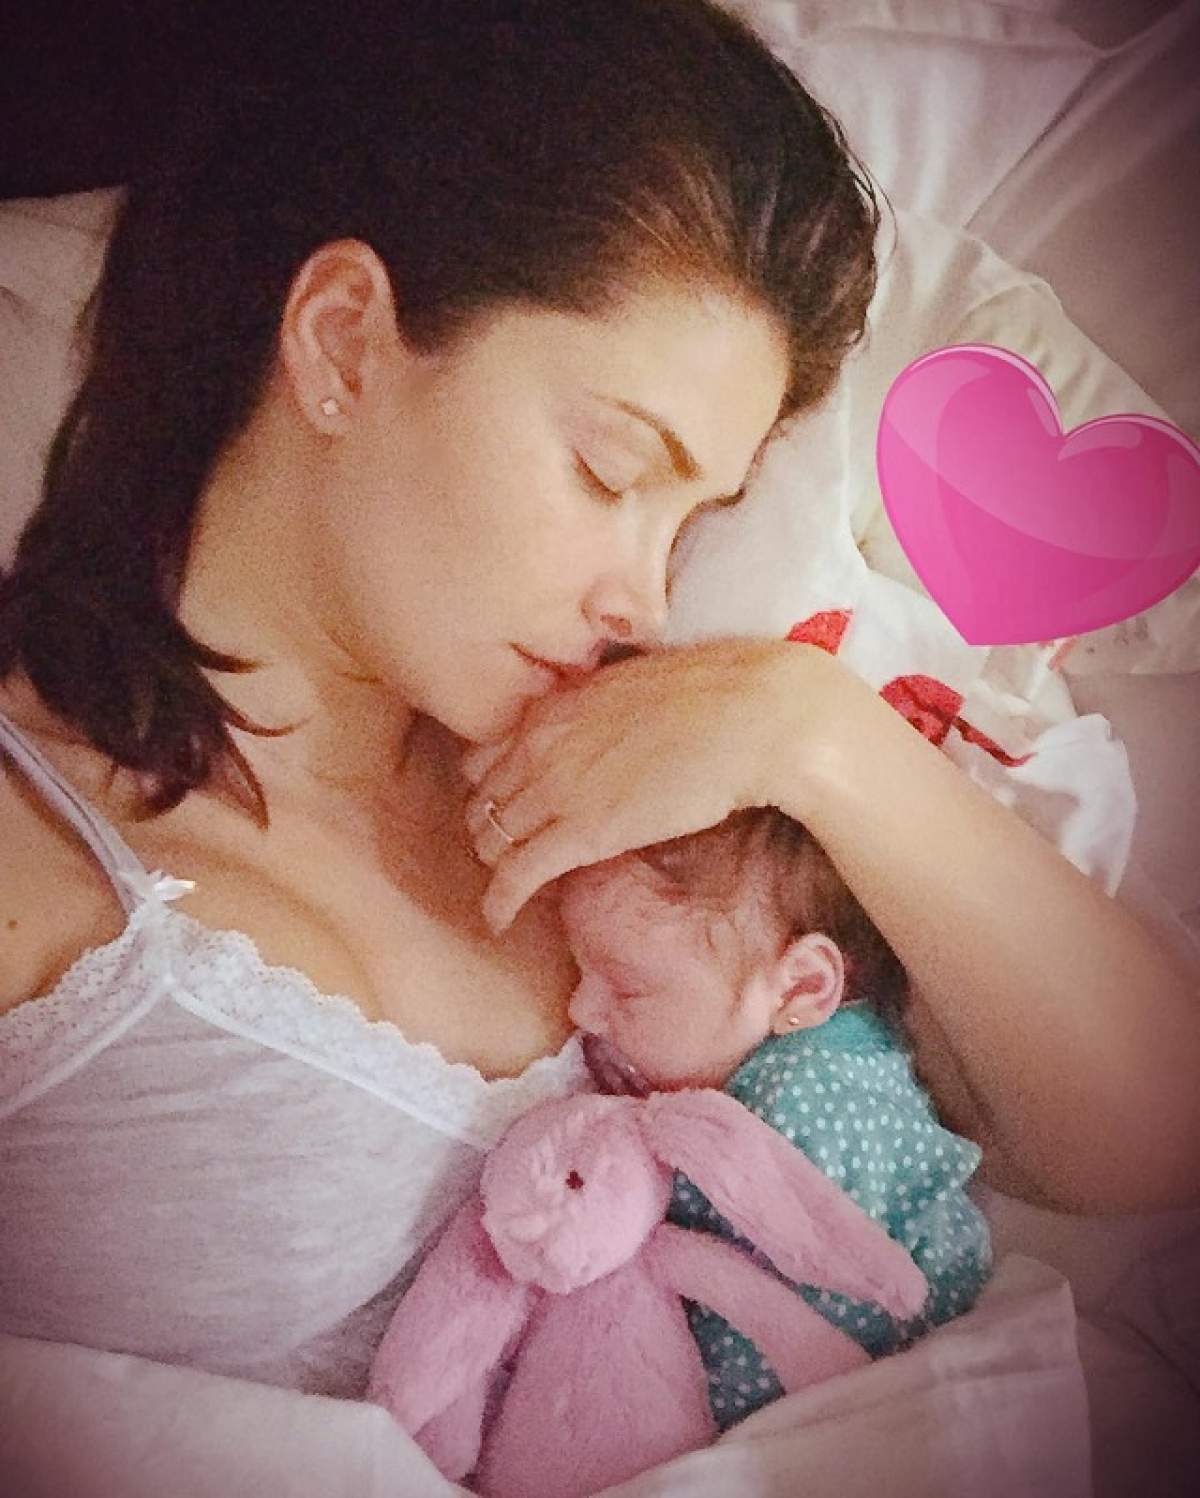 FOTO / Alina Puşcaş şi fiica ei, în cel mai intim moment mamă-fiică! Melissa e bucăţică ruptă din vedetă